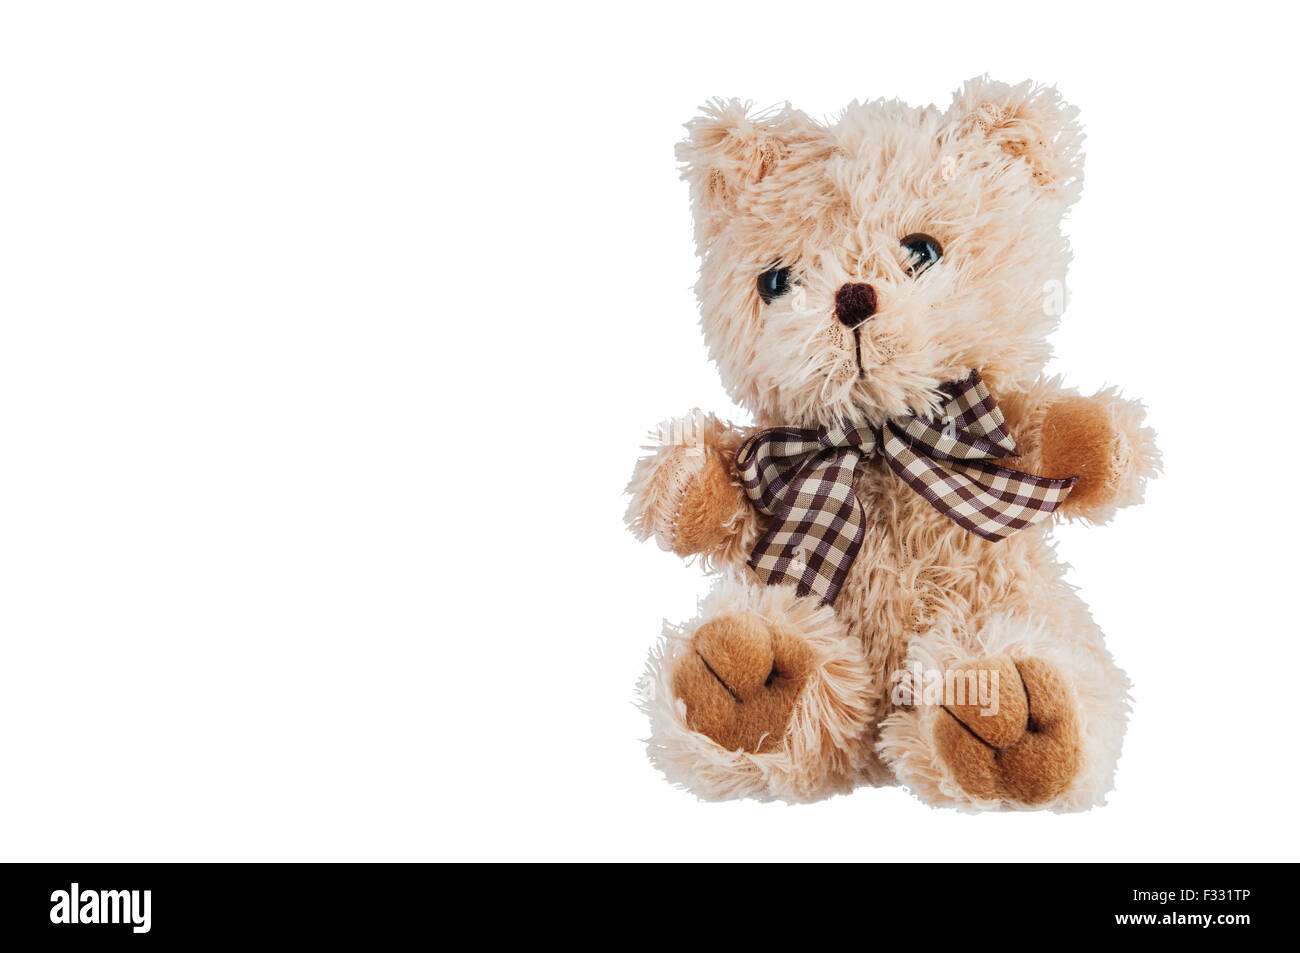 Teddy-bear toy isolé sur un fond blanc. Banque D'Images